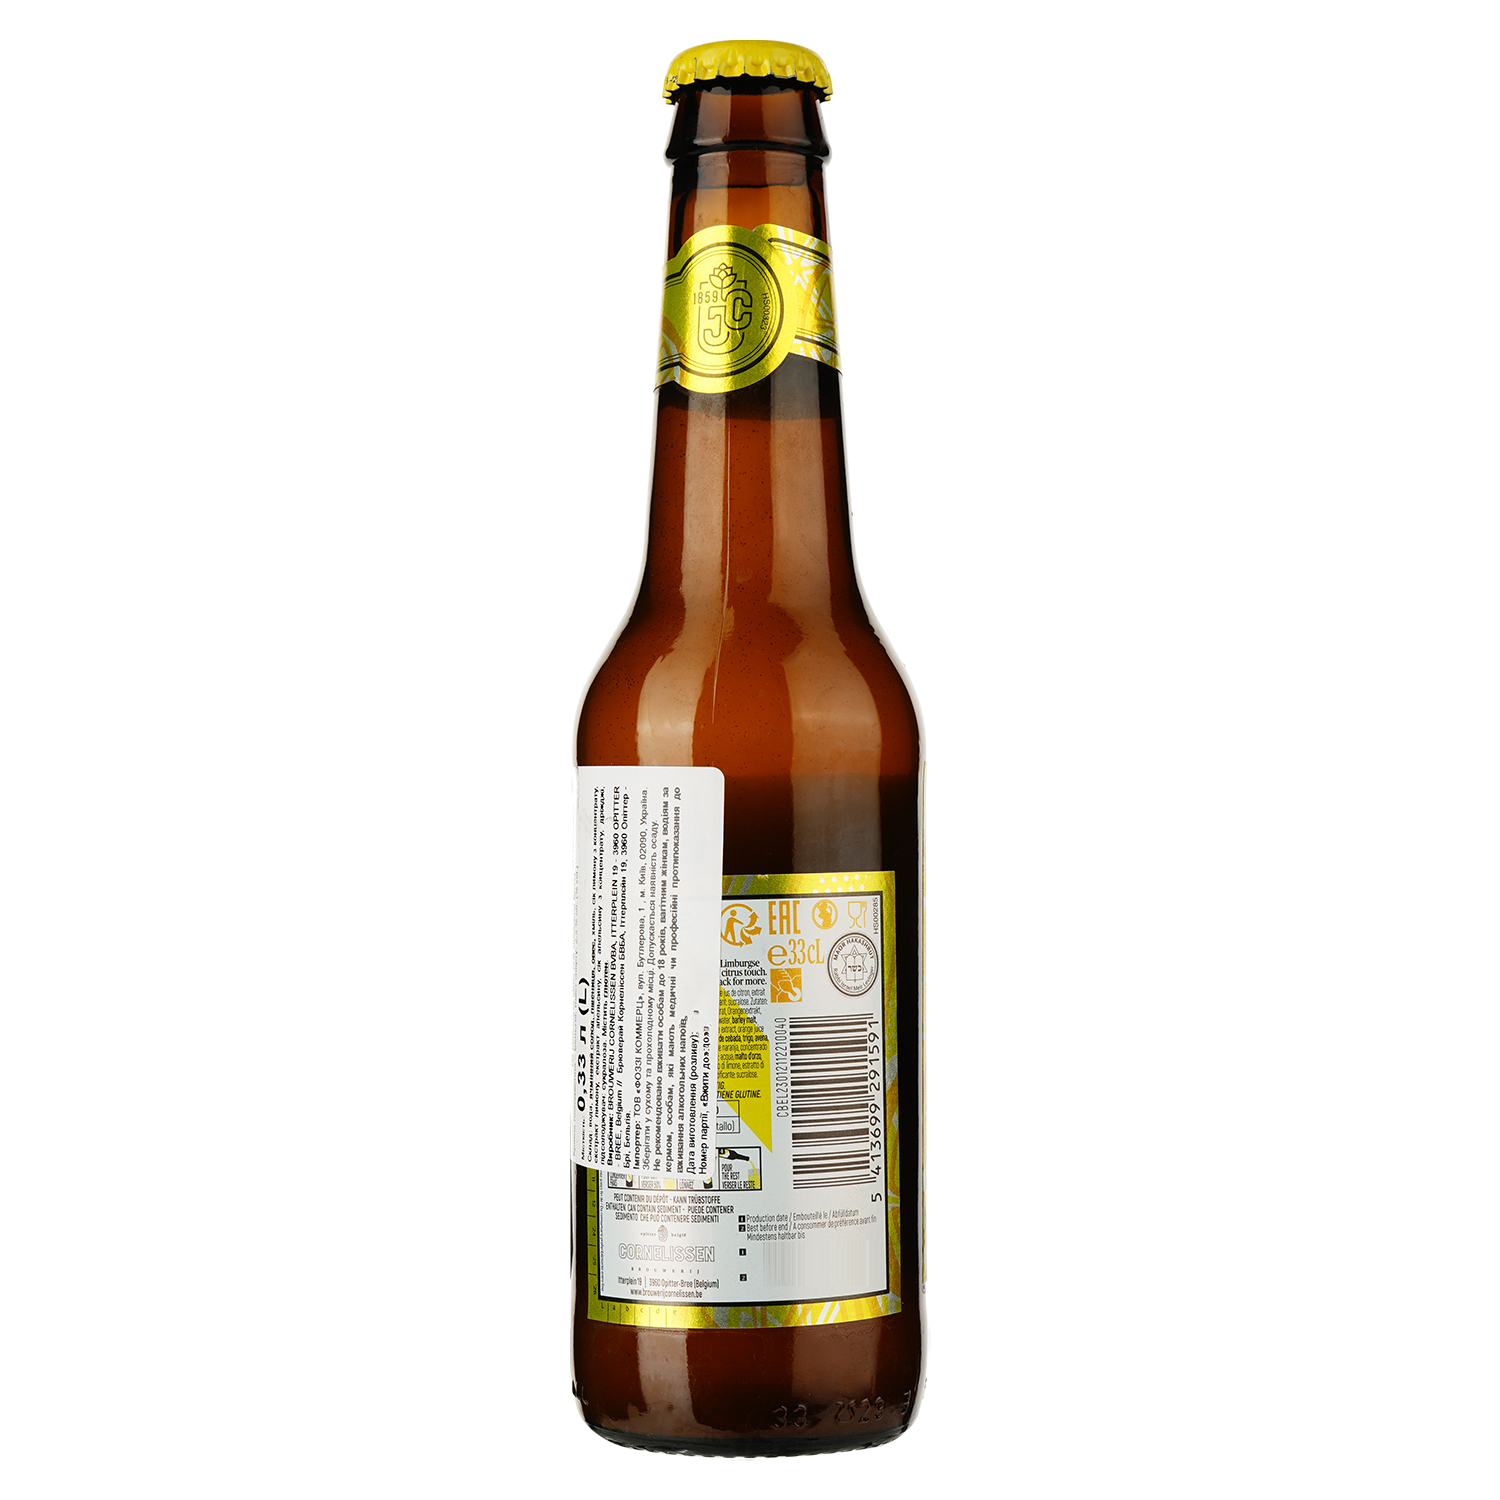 Пиво Limburgse Witte Lemon біле 2.3% 0.33 л - фото 2